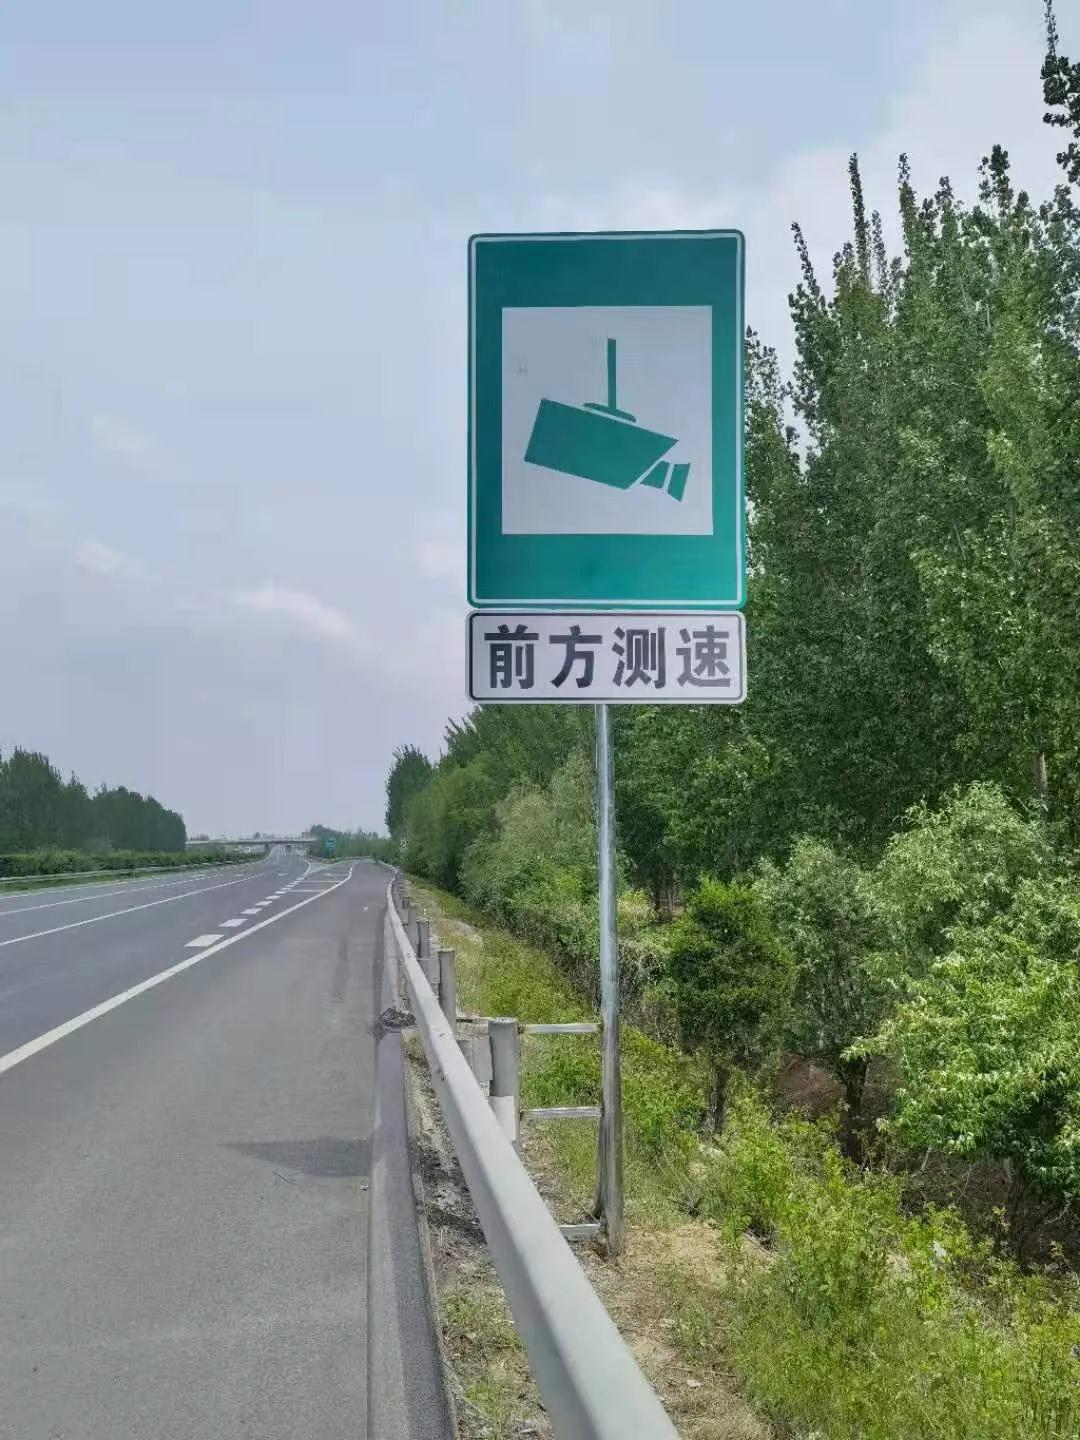 车主们注意邯郸这里新增一处测速设备